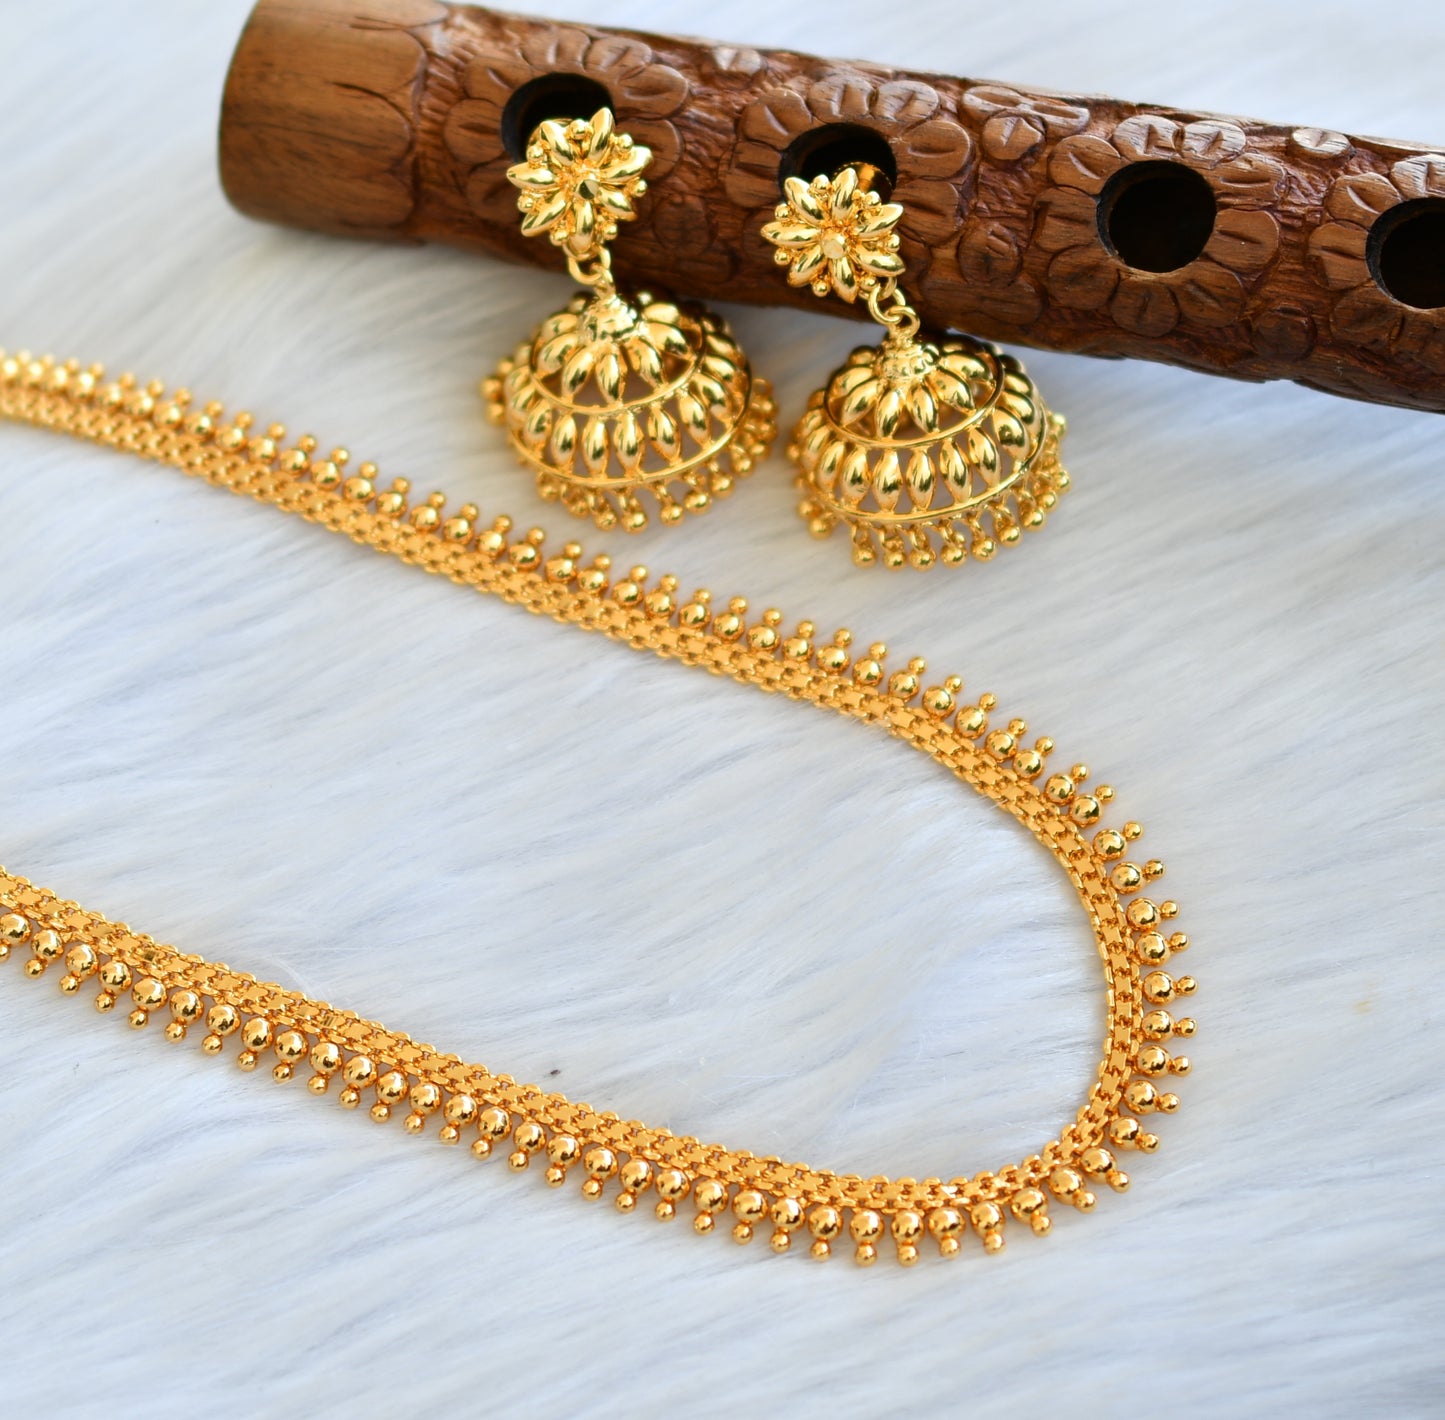 Gold tone Kerala style short haar and pair of jhumkka dj-40291